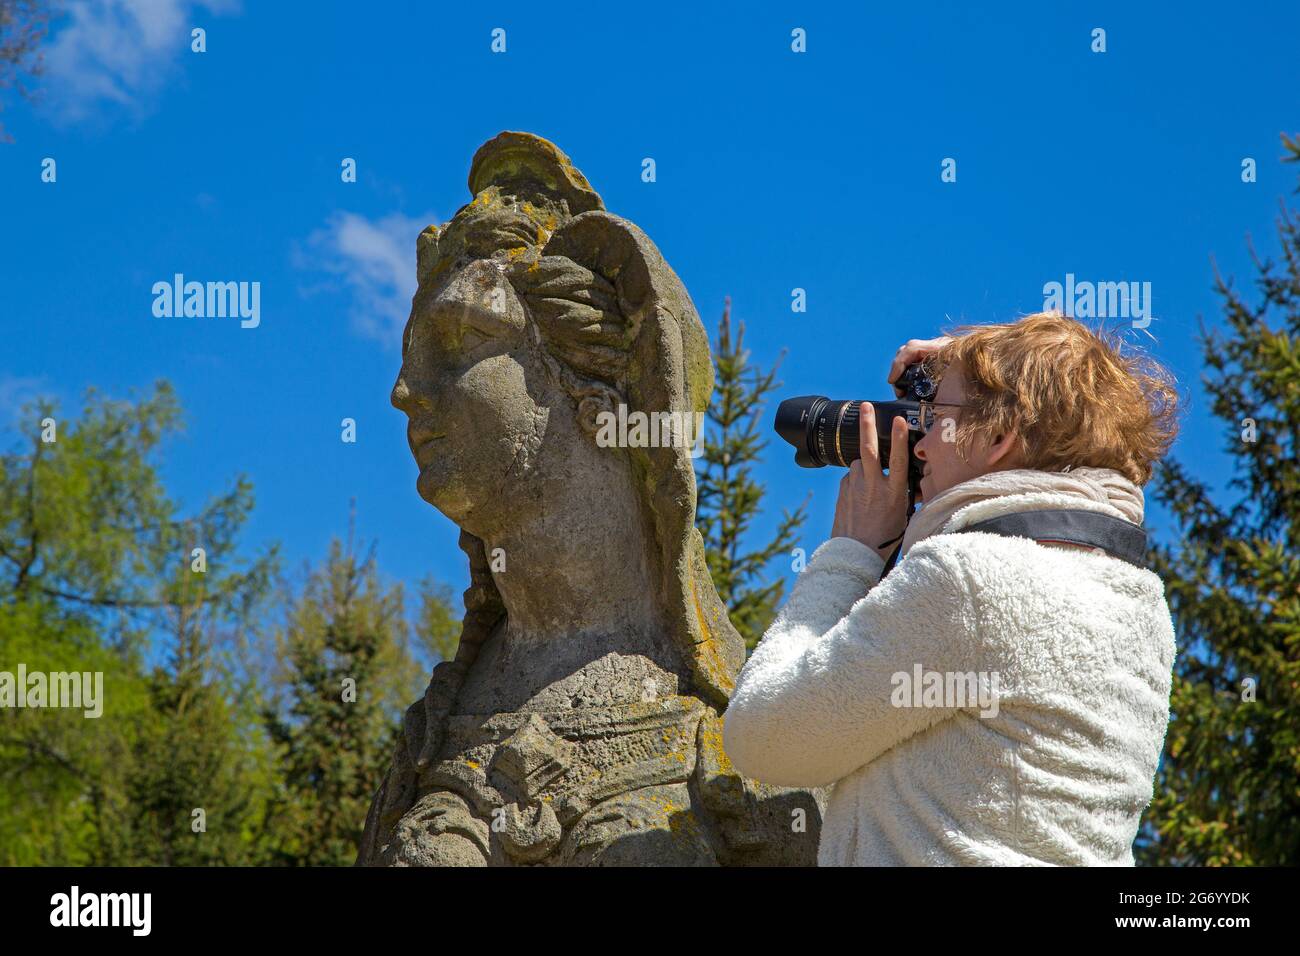 Frau, die die Sphinx-Statue fotografiert, Schloss Rheinsberg, Brandenburg, Deutschland Stockfoto